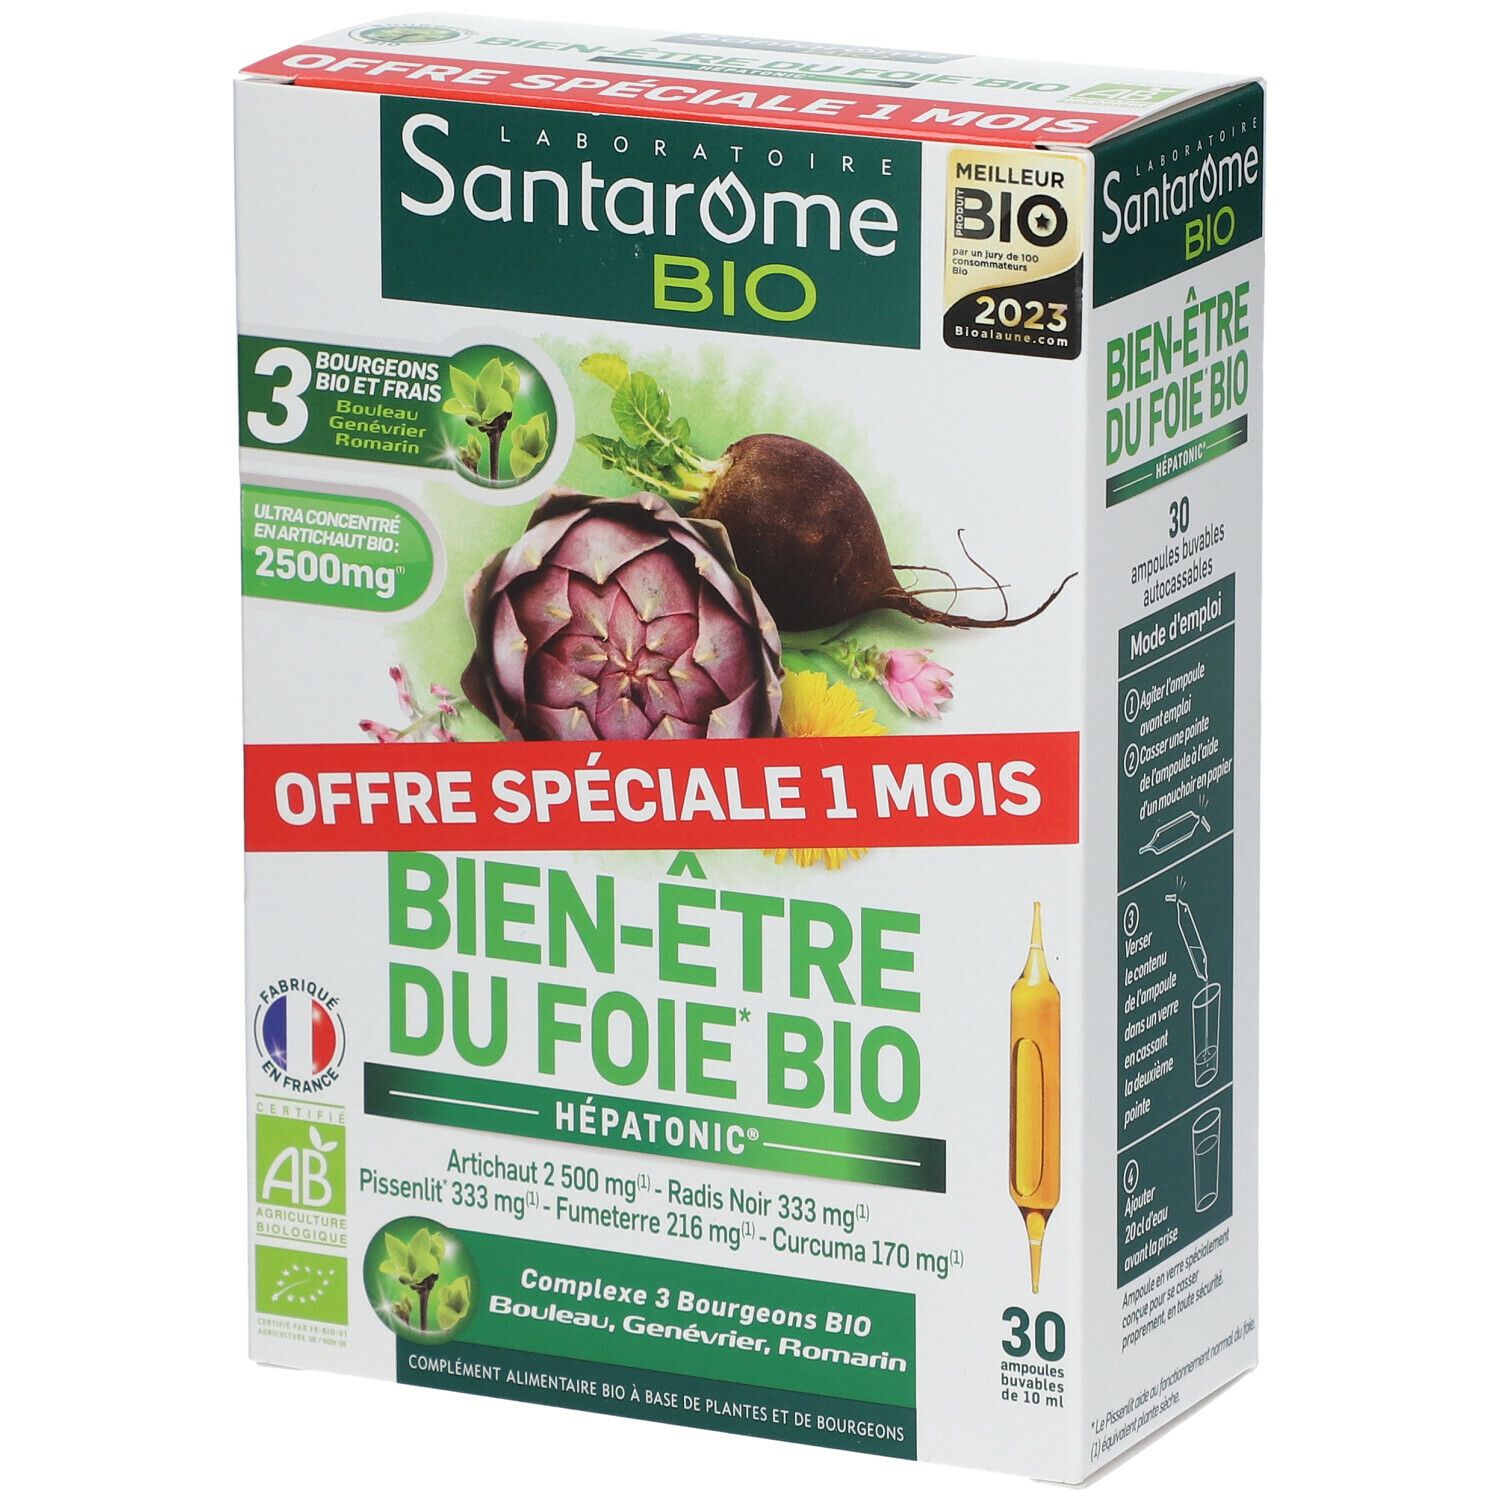 Santarome Bio Bien-Être du Foie Bio - Hépatonic